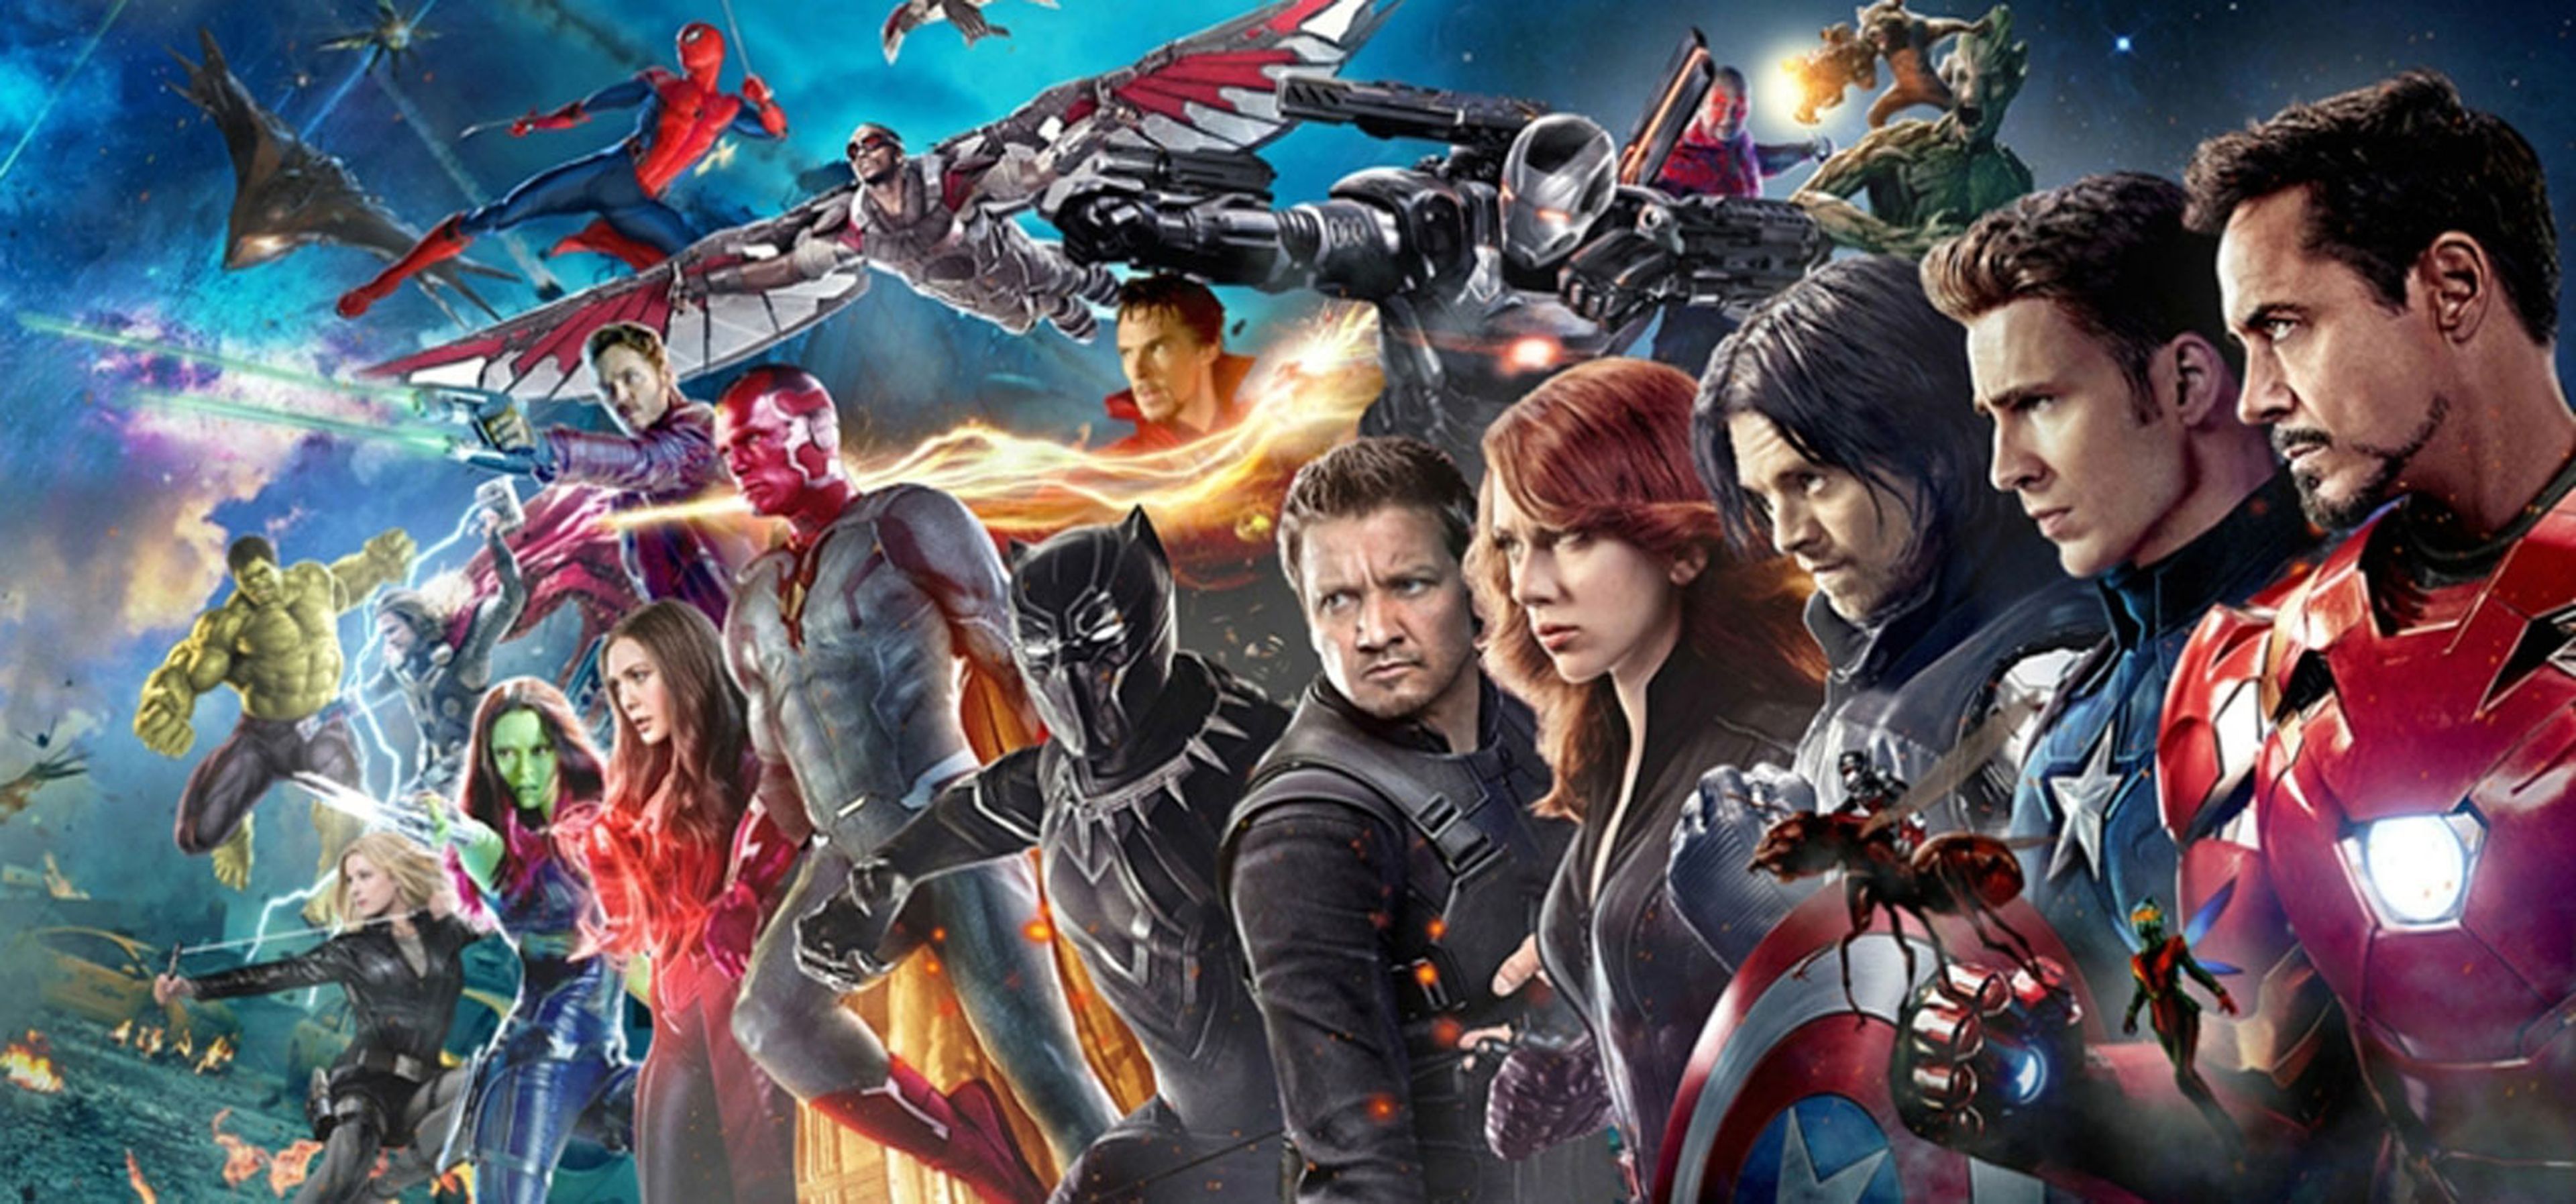 Películas indispensables antes de ver Vengadores: Infinity War